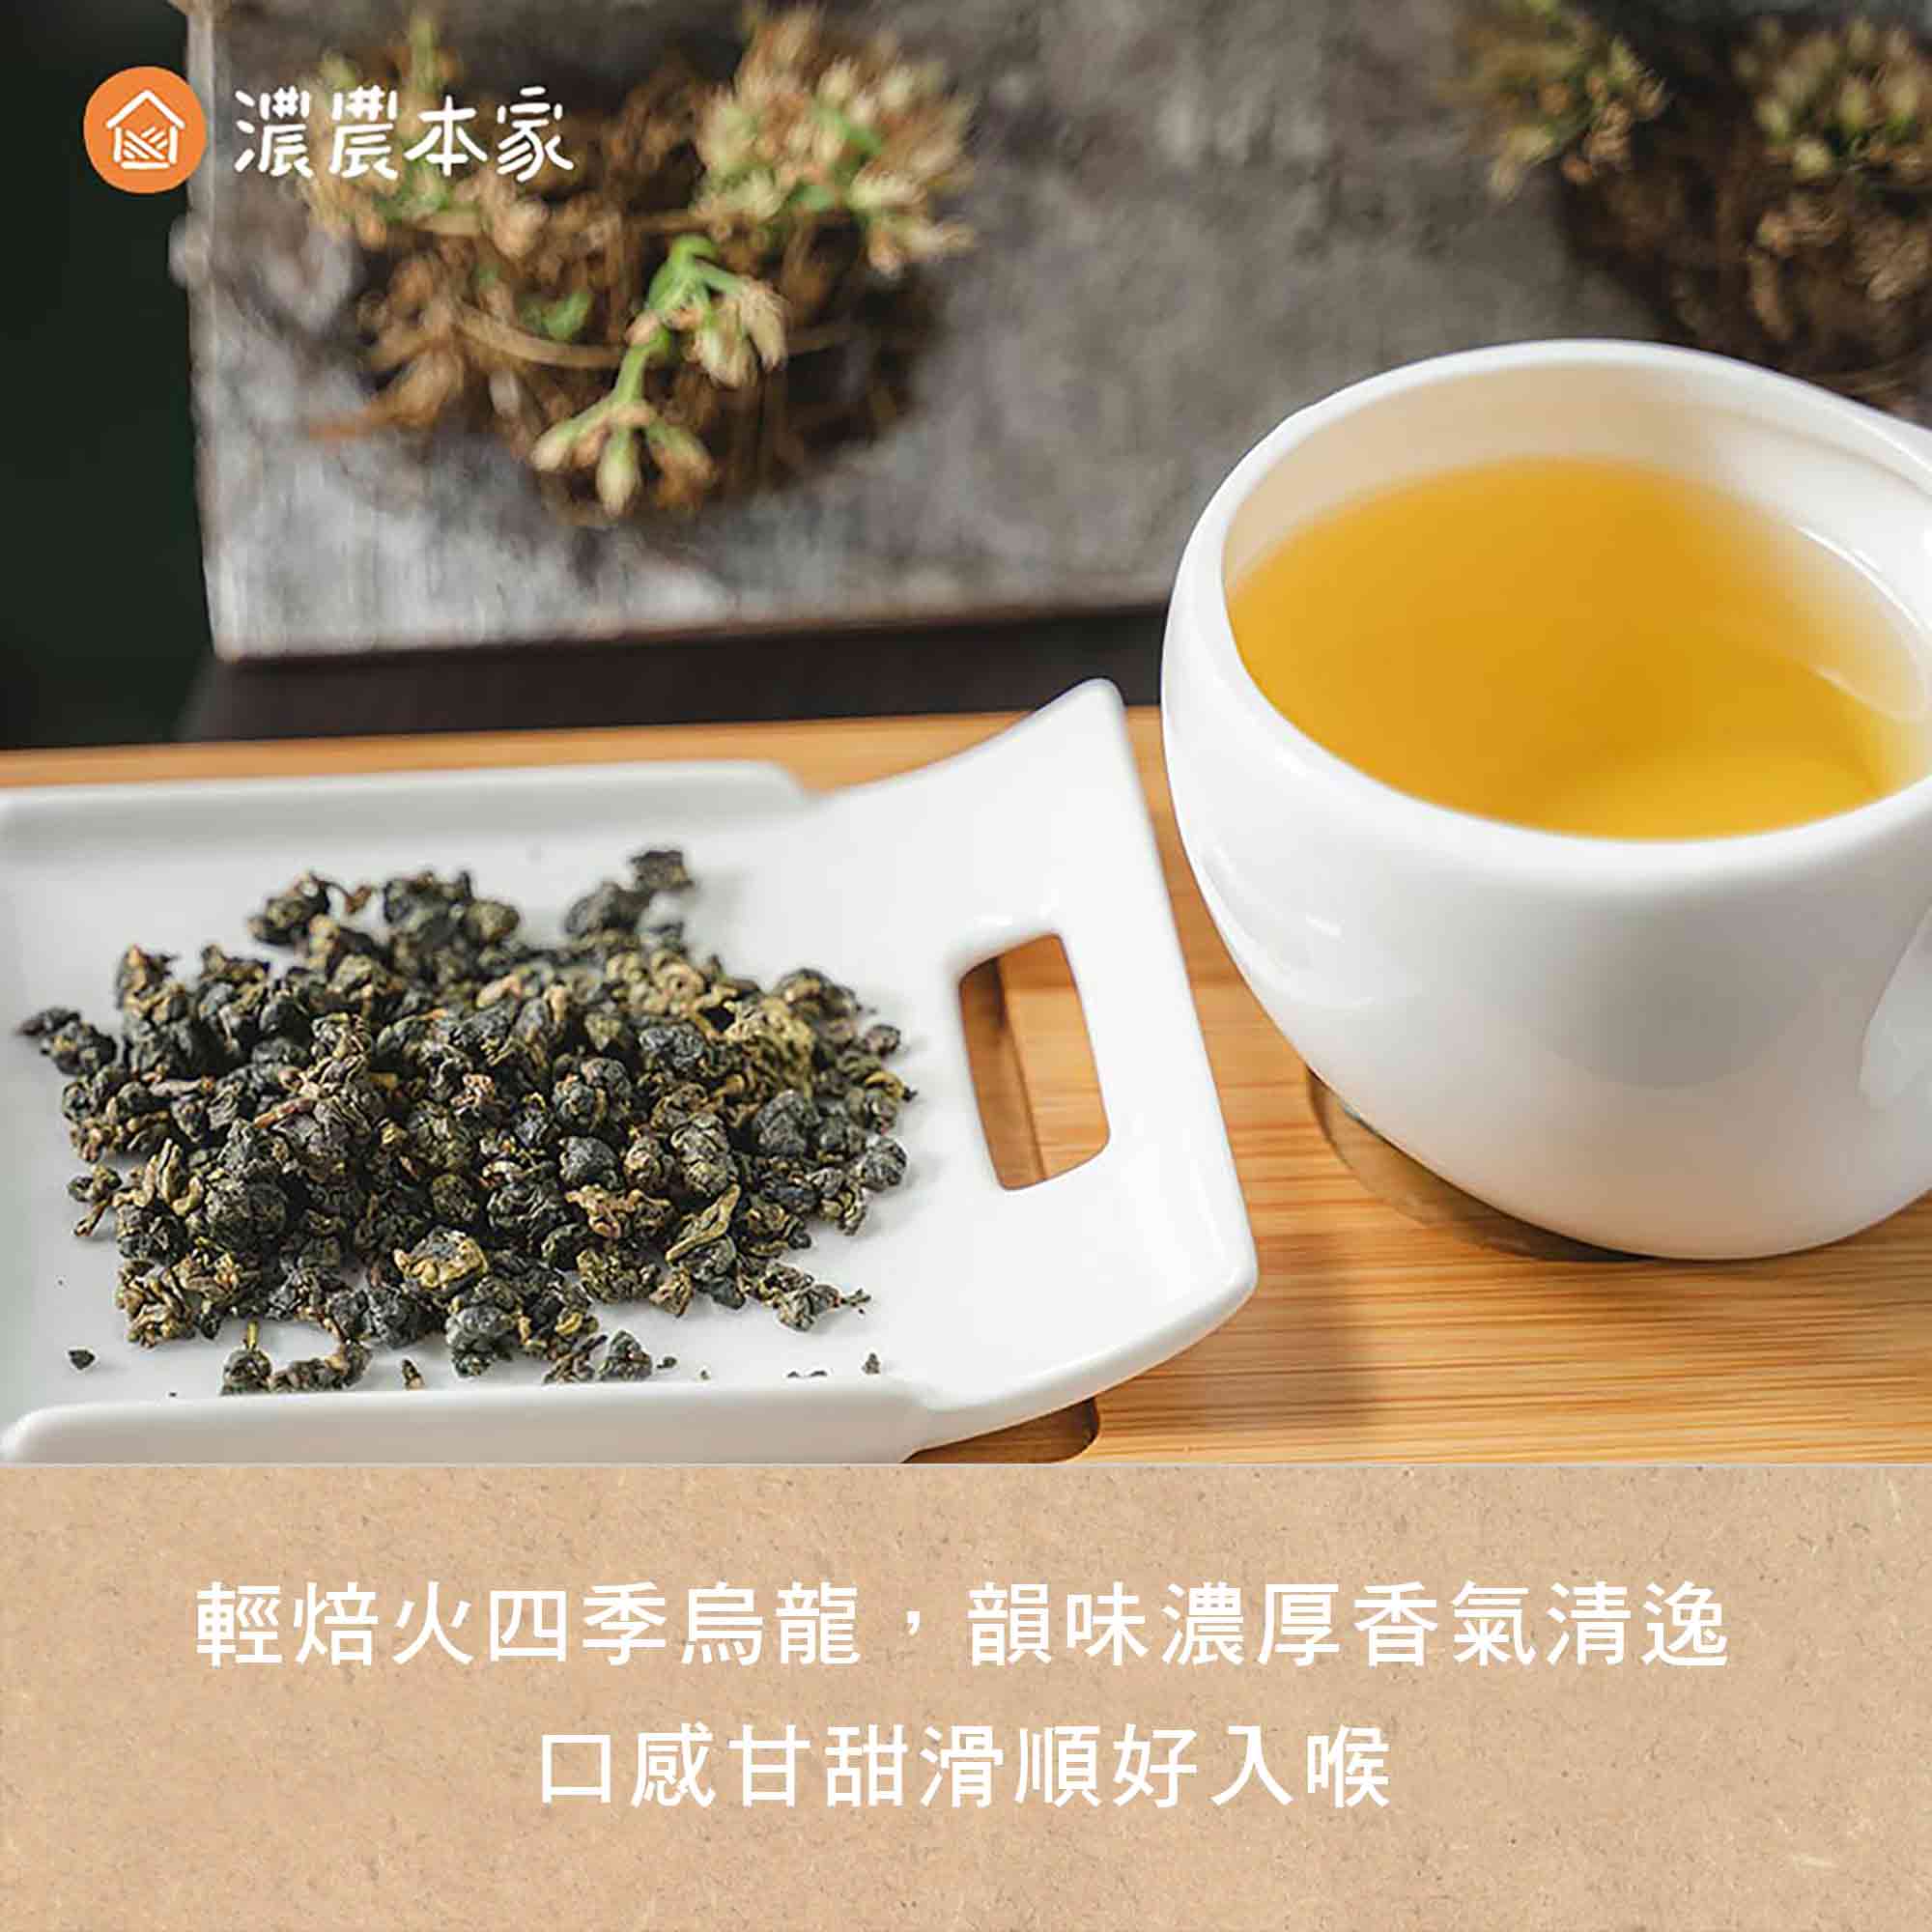 外國人喜歡的經典台灣特色零食推薦實用人氣台灣高山烏龍茶包